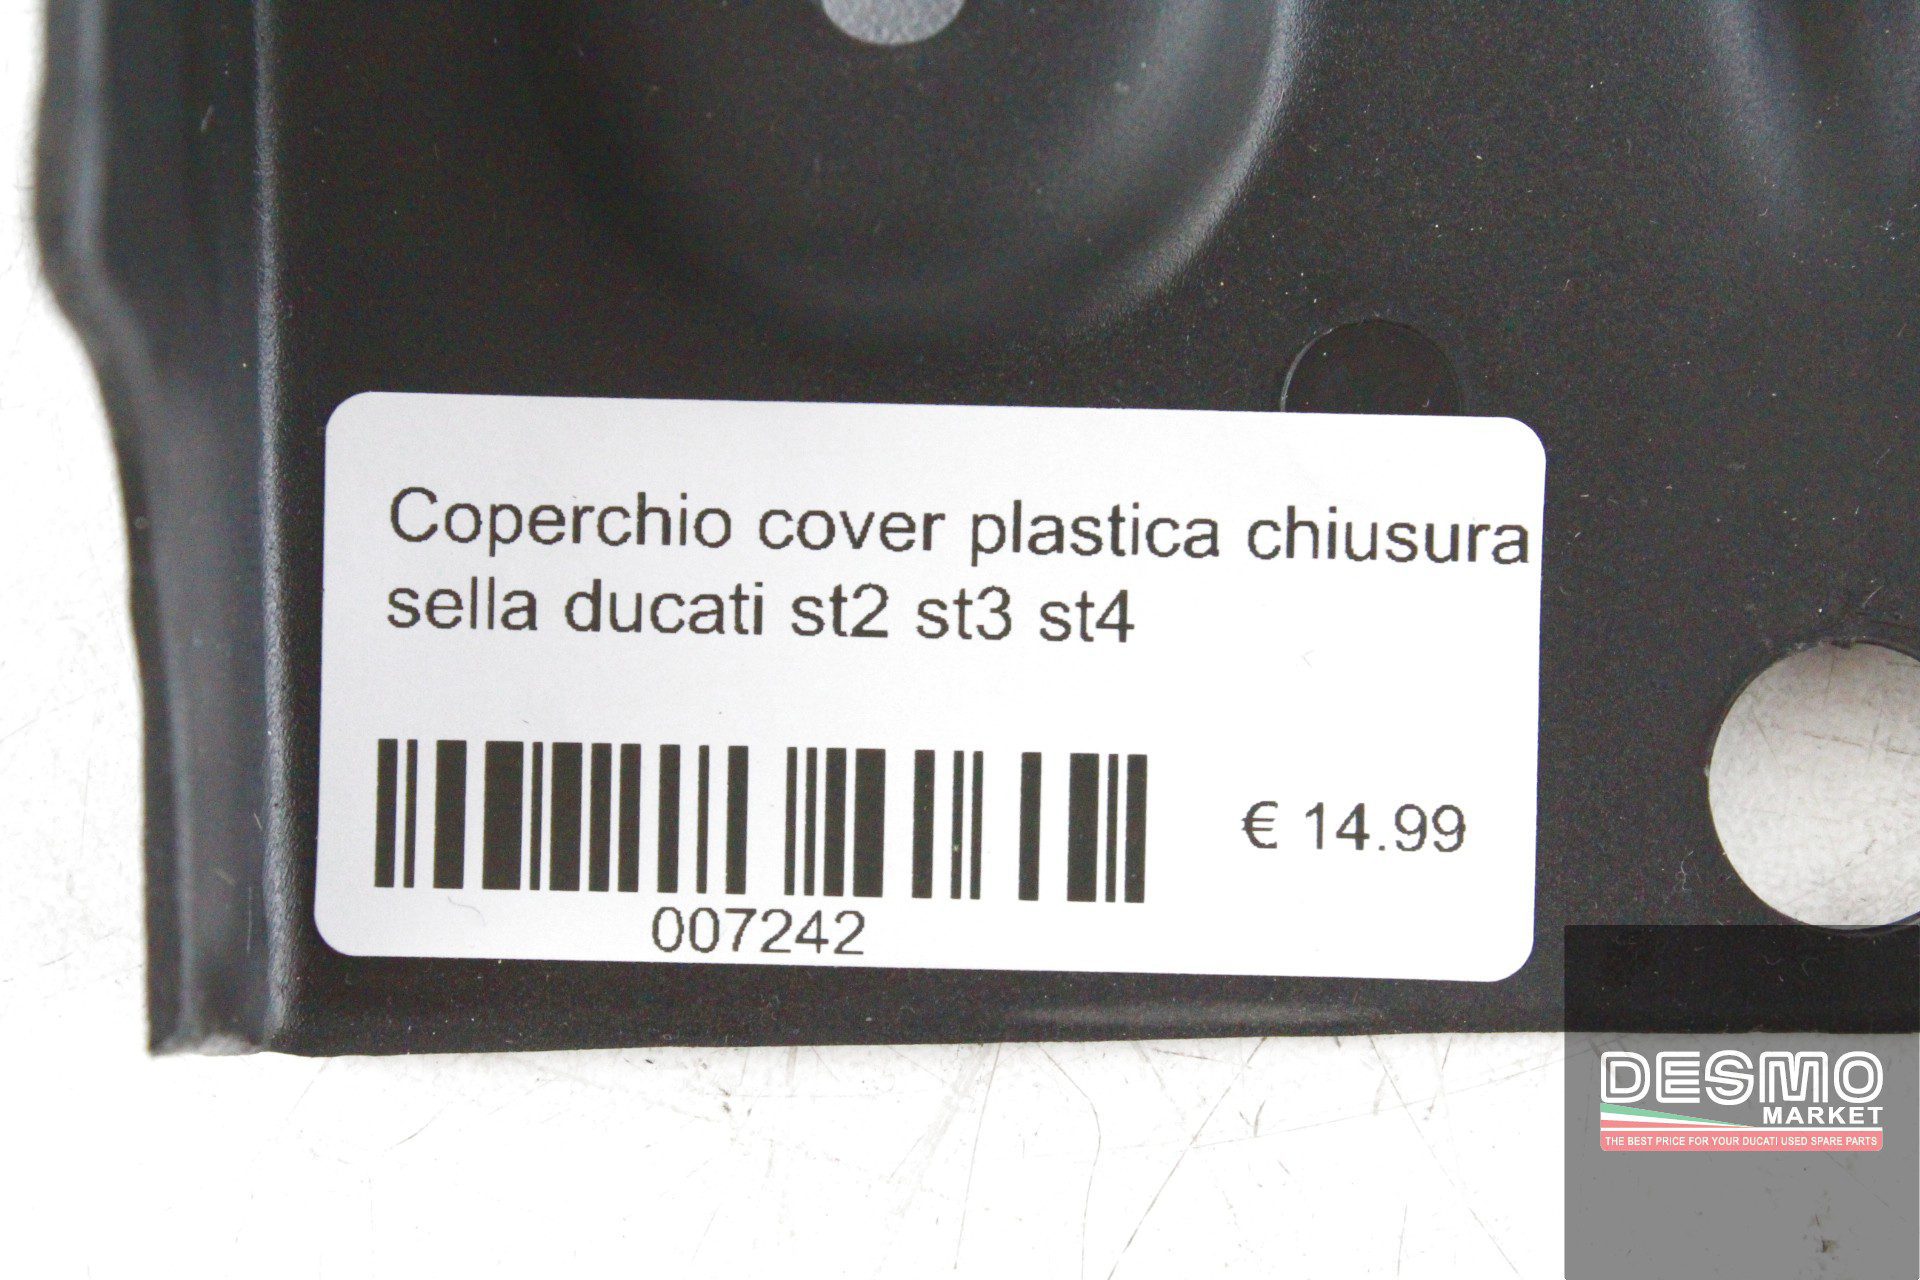 Coperchio cover plastica chiusura sella ducati st2 st3 st4